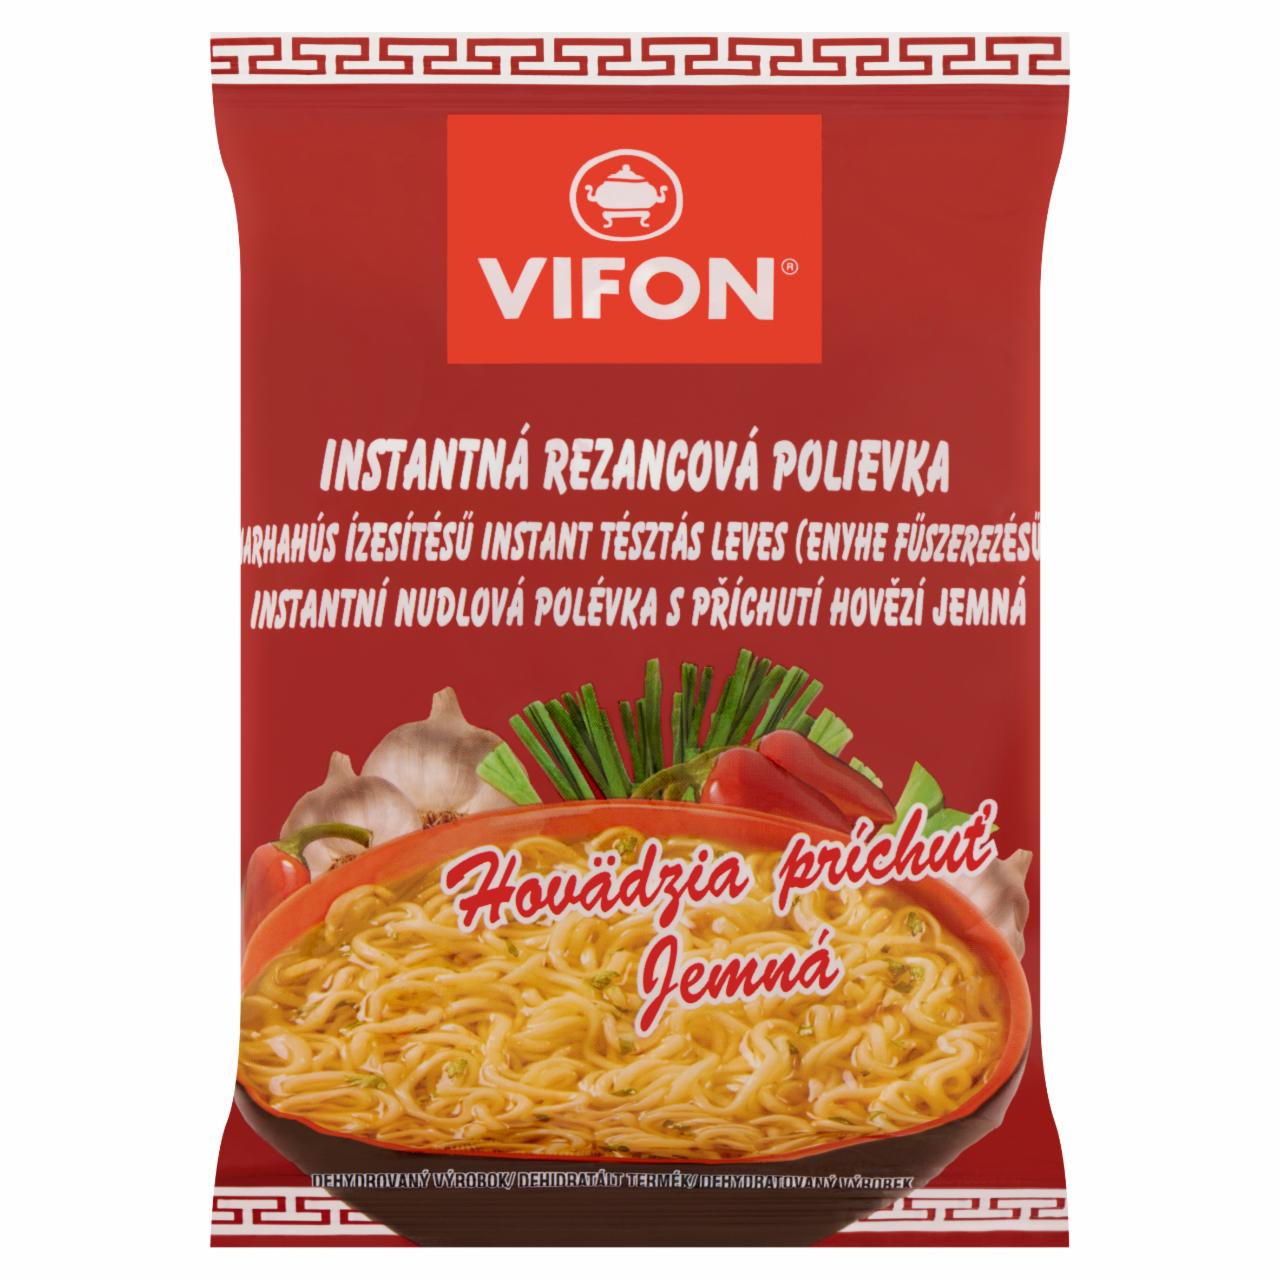 Képek - Vifon enyhe fűszerezésű, marhahús ízesítésű instant tésztás leves 60 g